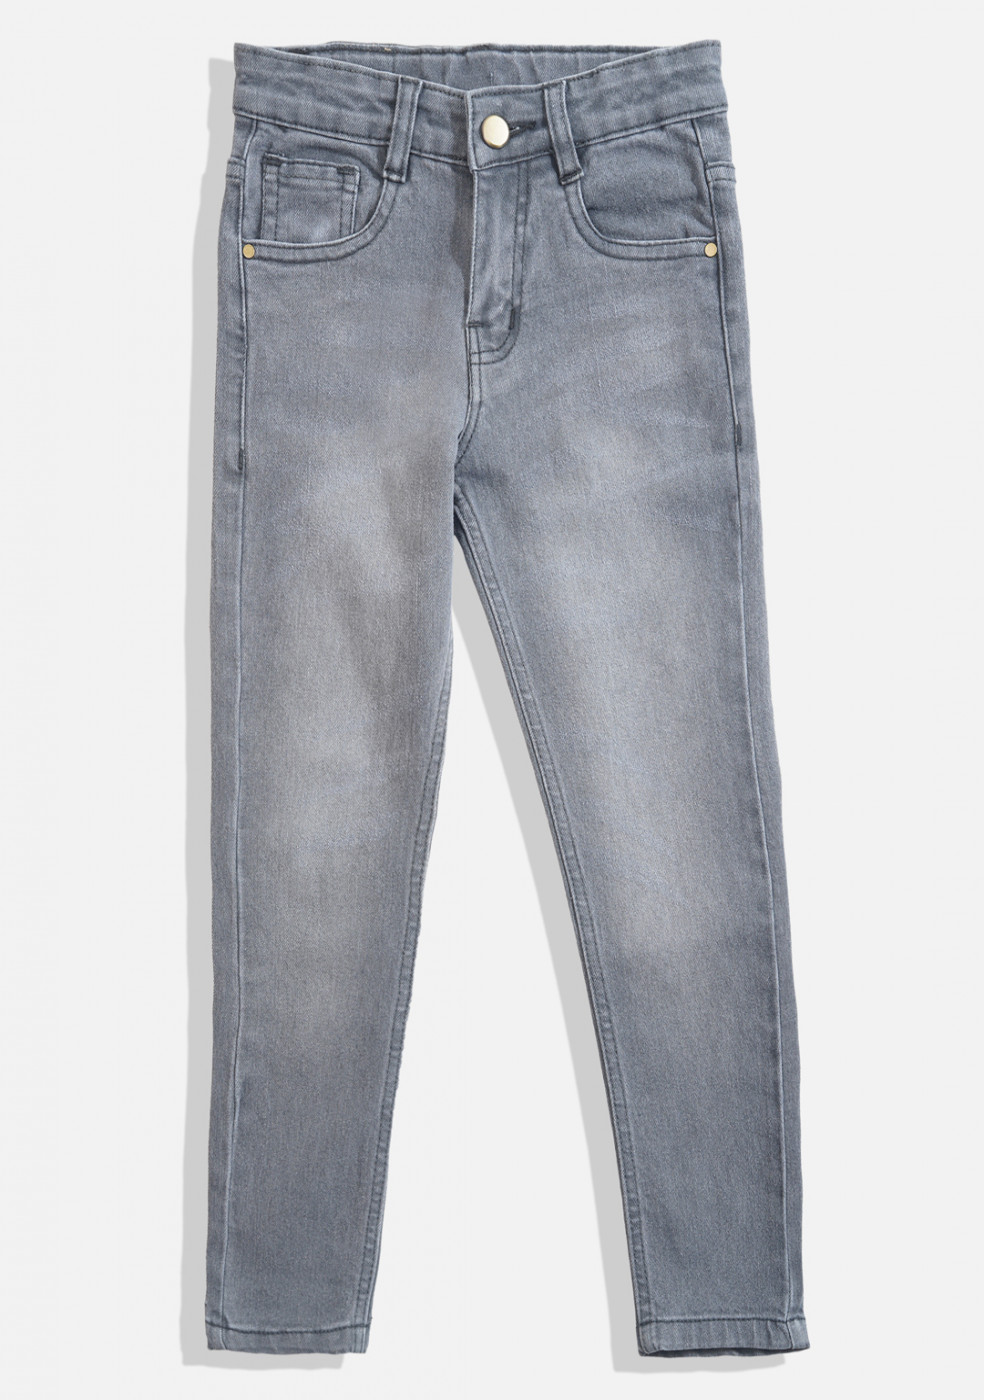 Gray Denim Jeans For Boys